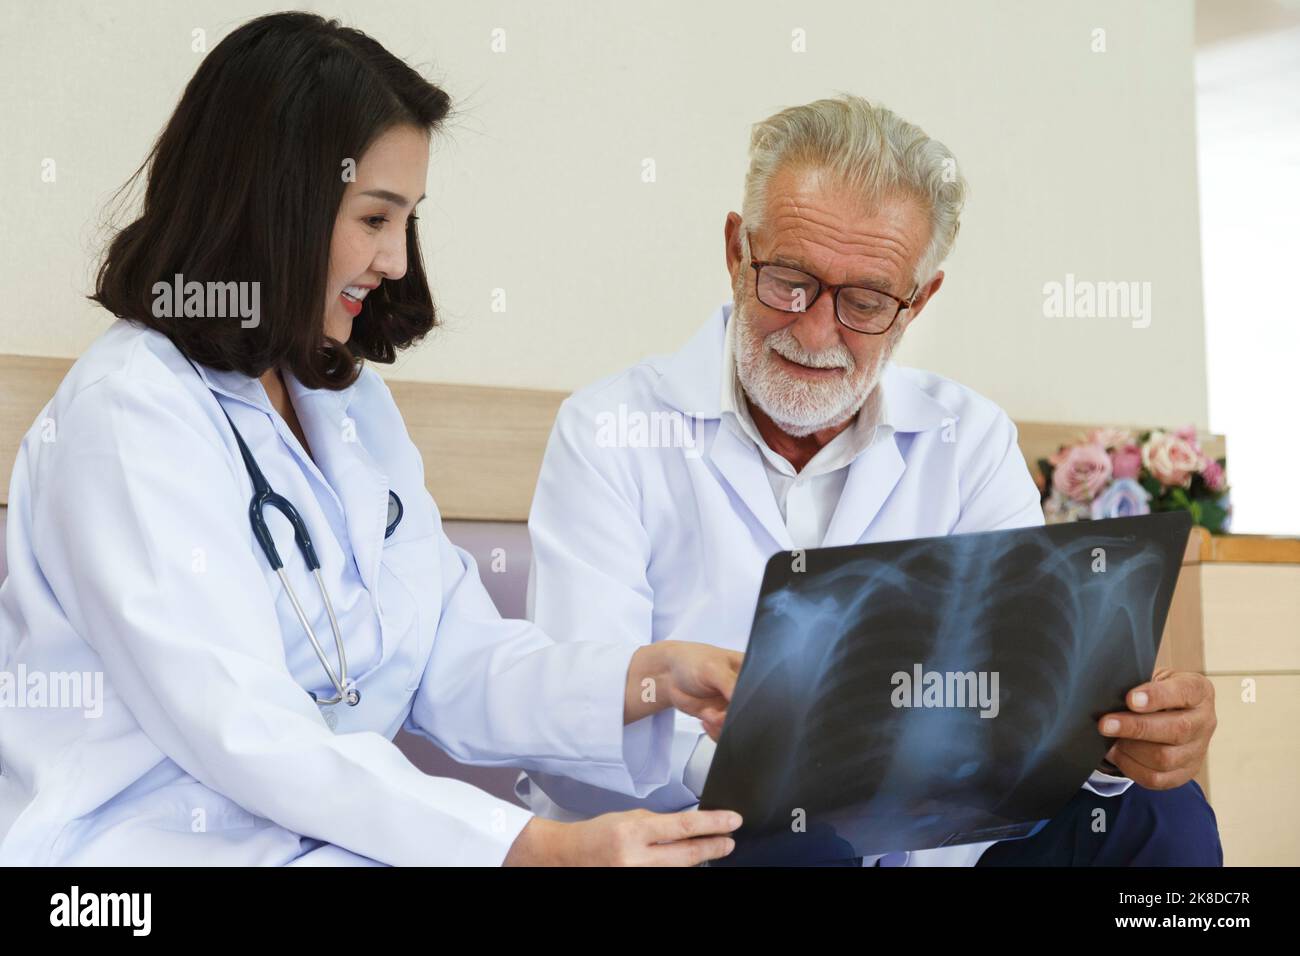 Expertise Senior chirurgische Blick auf Röntgenfilm zu beraten und zu diskutieren für die Operation Behandlung der Patient mit jungen asiatischen Frau Arzt in der hos Stockfoto